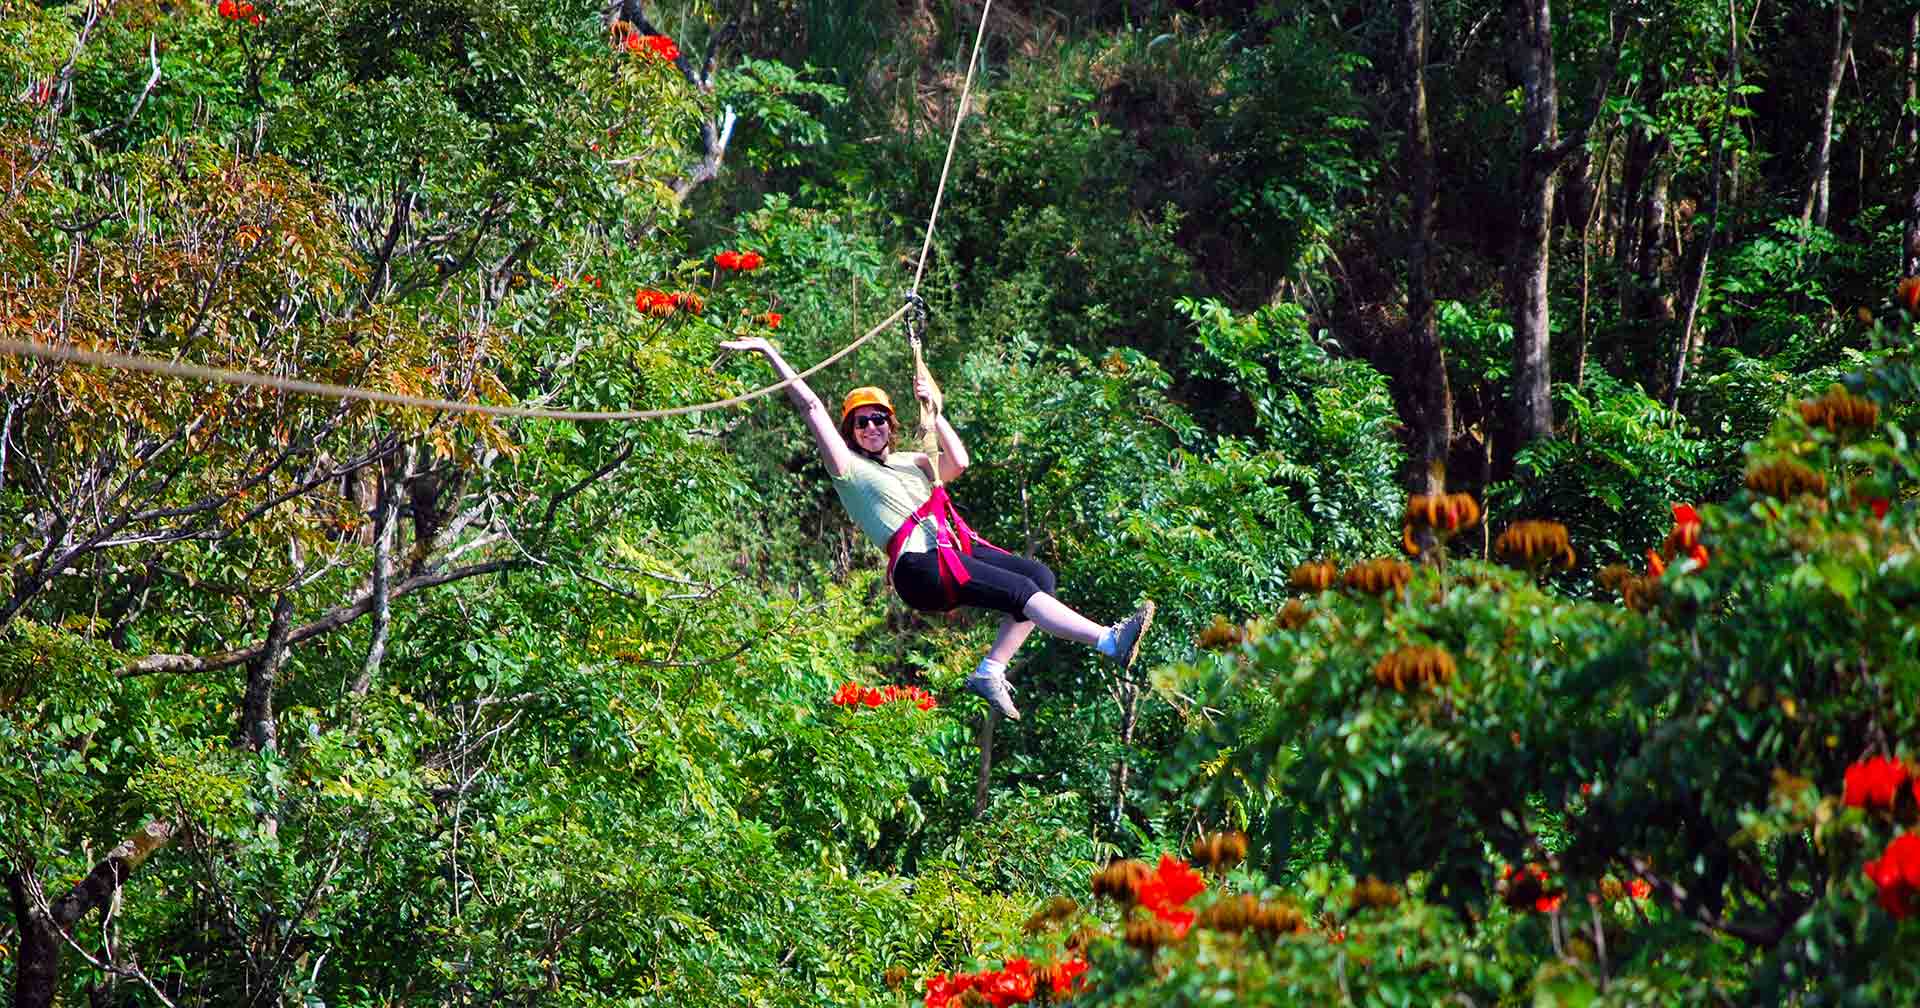 rainforest zipline park tours